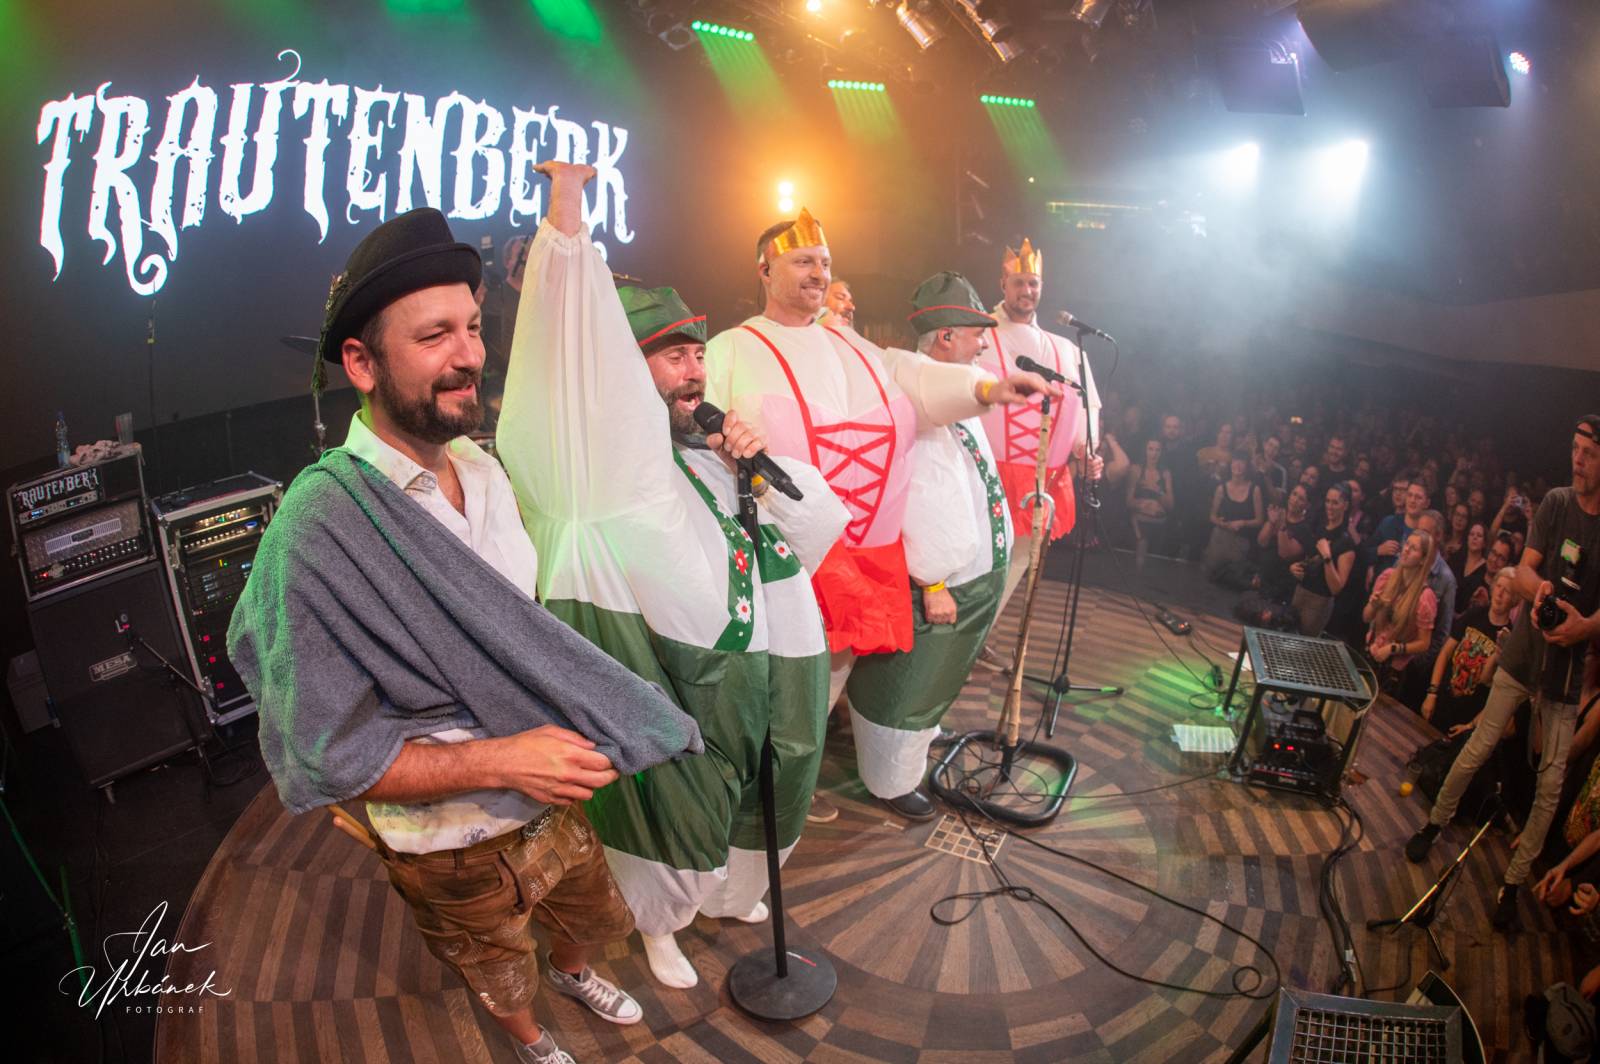 Trautenberk zahájil podzimní turné, dobrou náladou nakazil celý Lucerna Music Bar